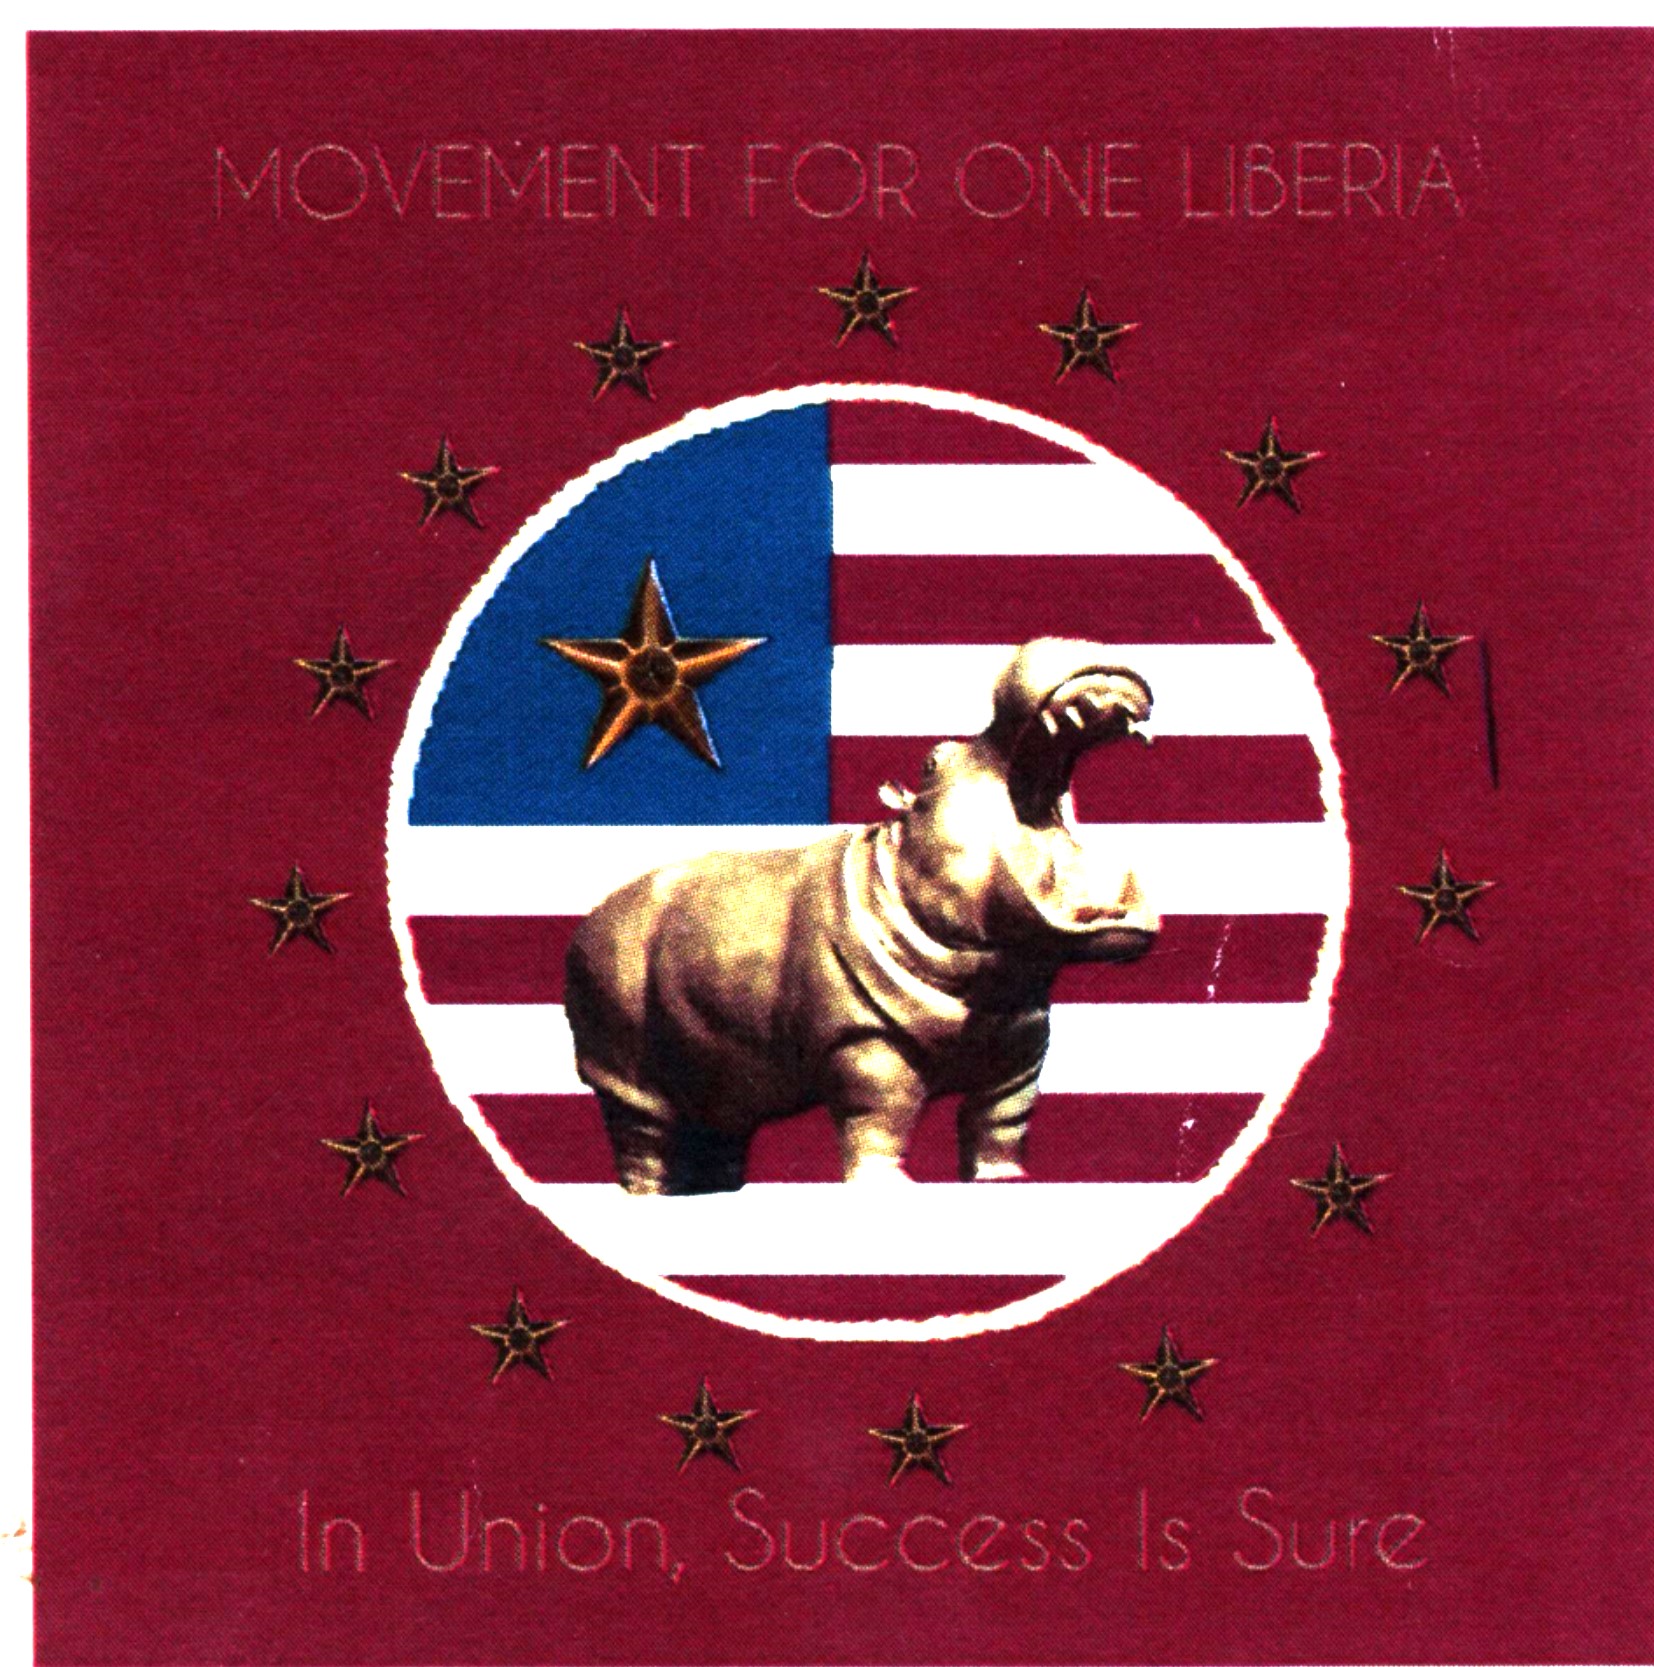 Movement for One Liberia (MOL) 